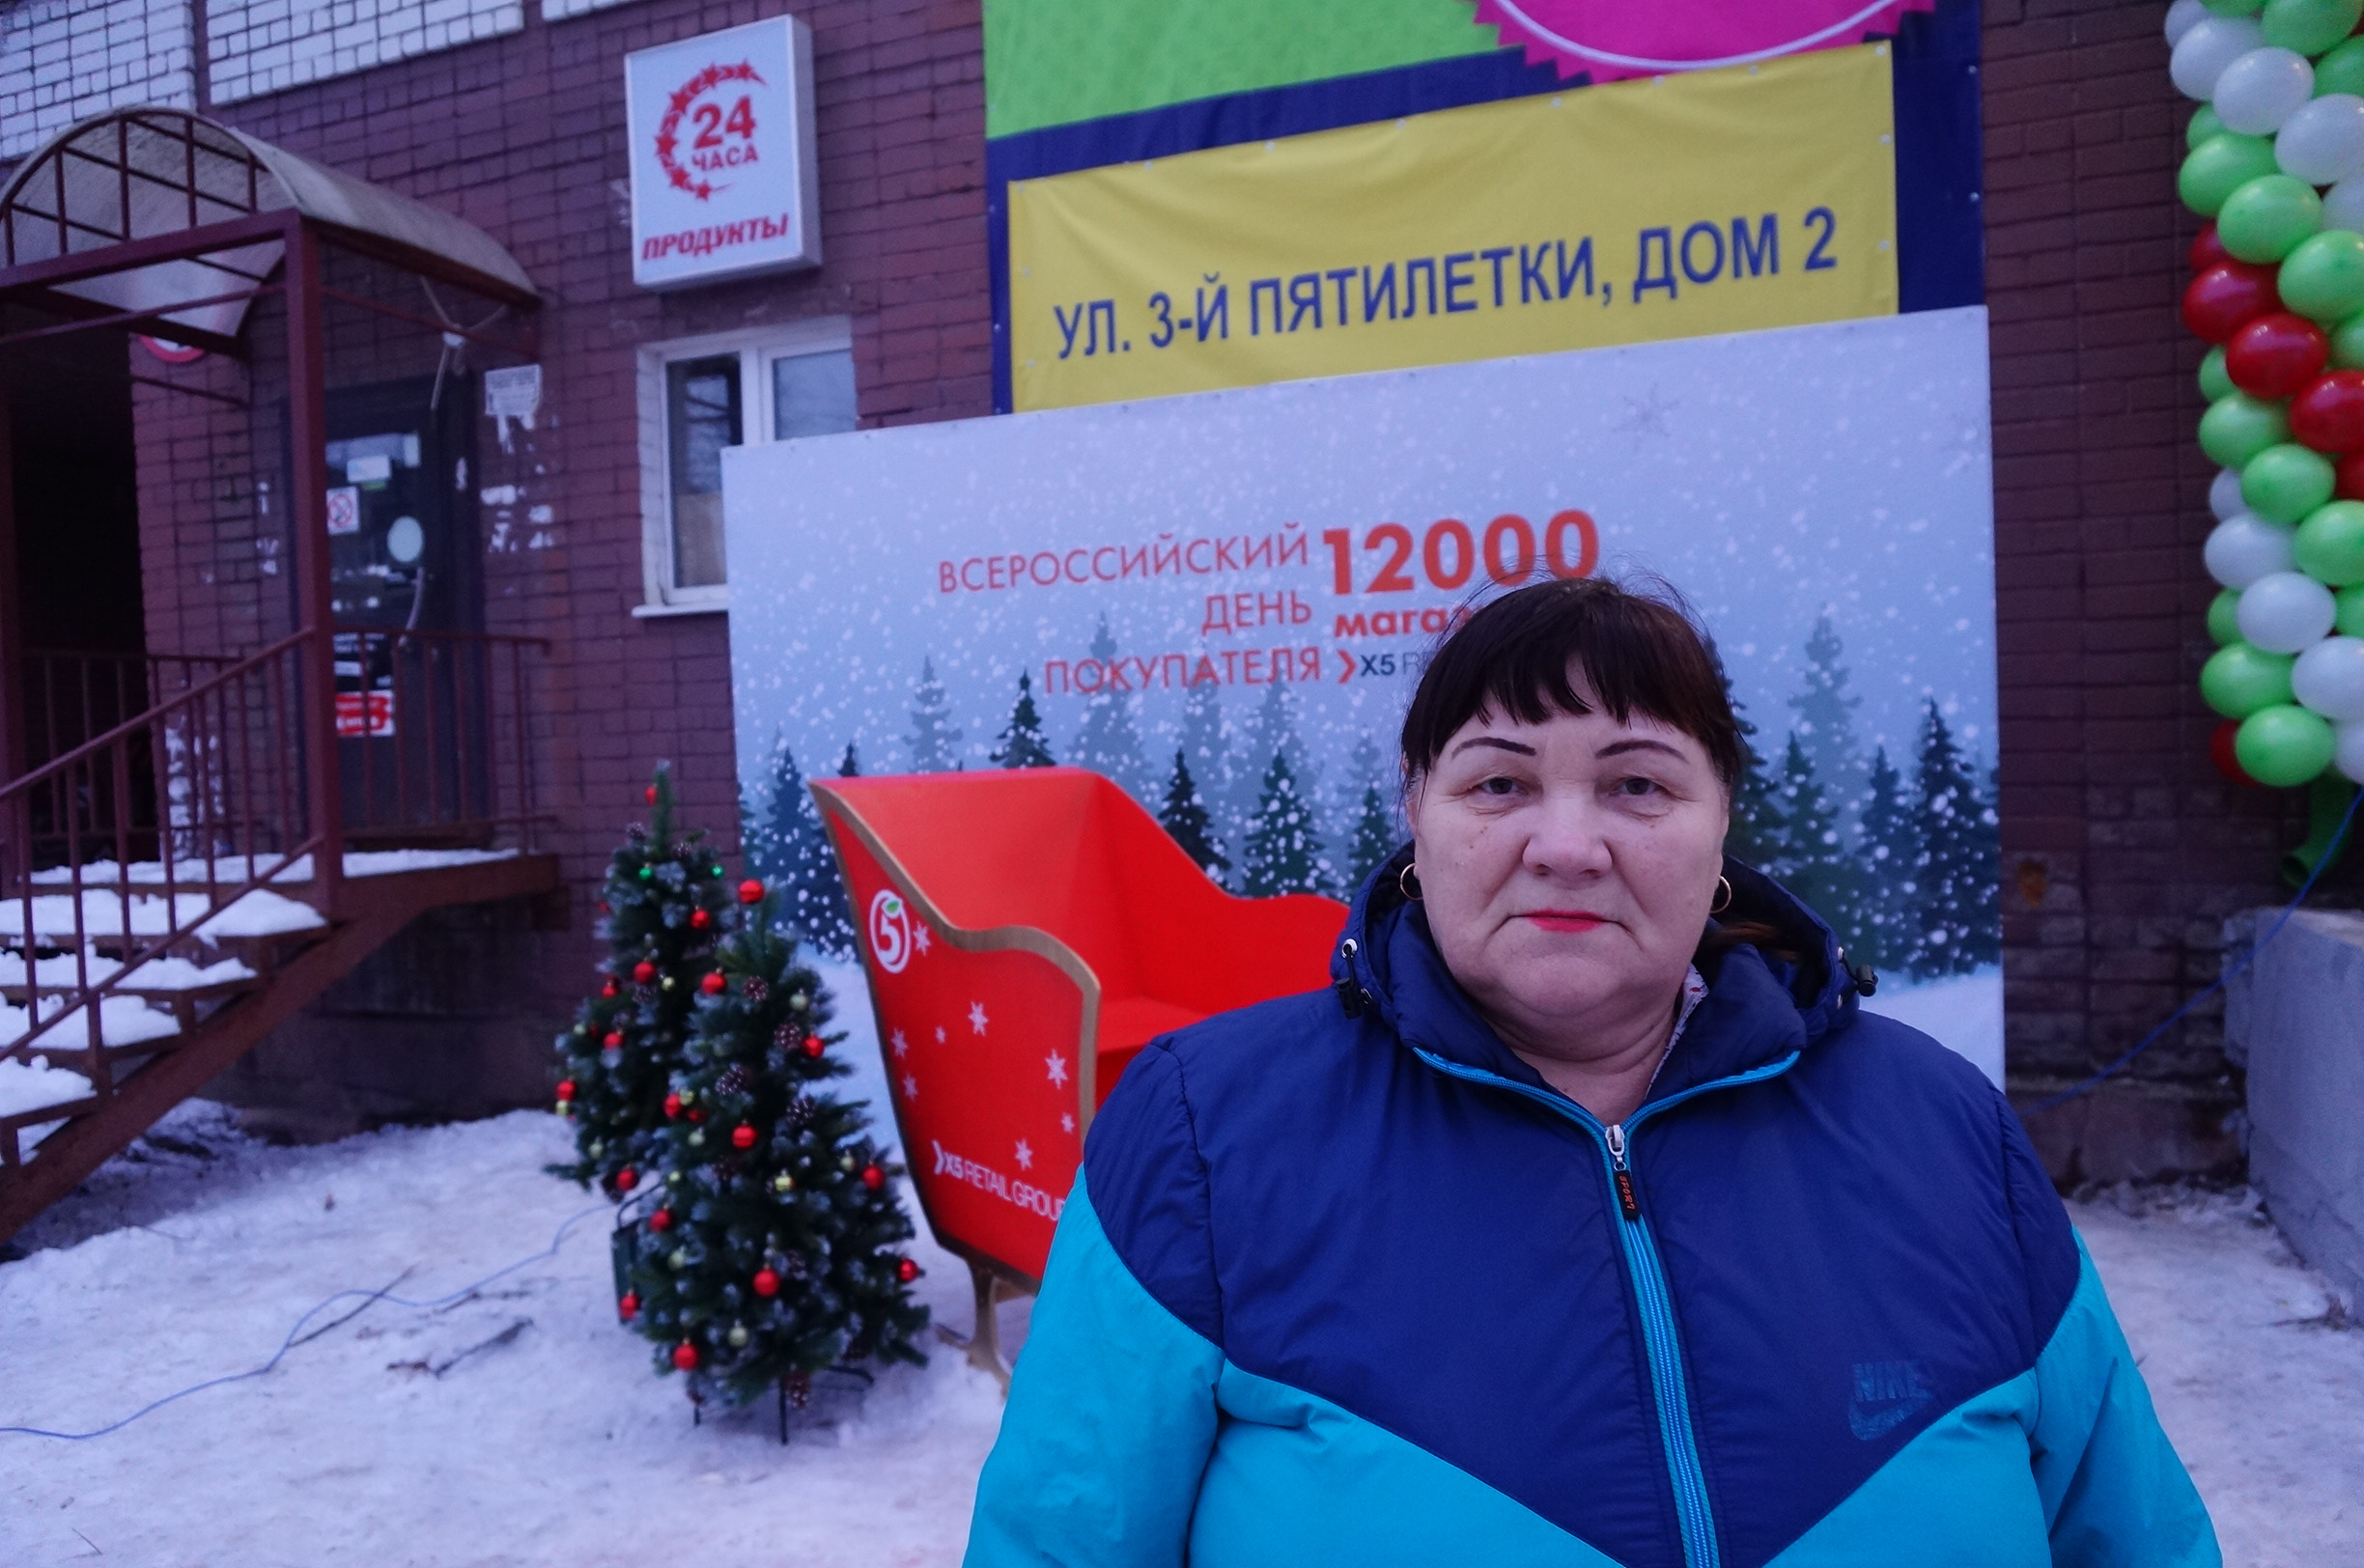 Чтобы купить продуктов в новой «Пятерочке», Галина Александровна проделала неблизкий путь